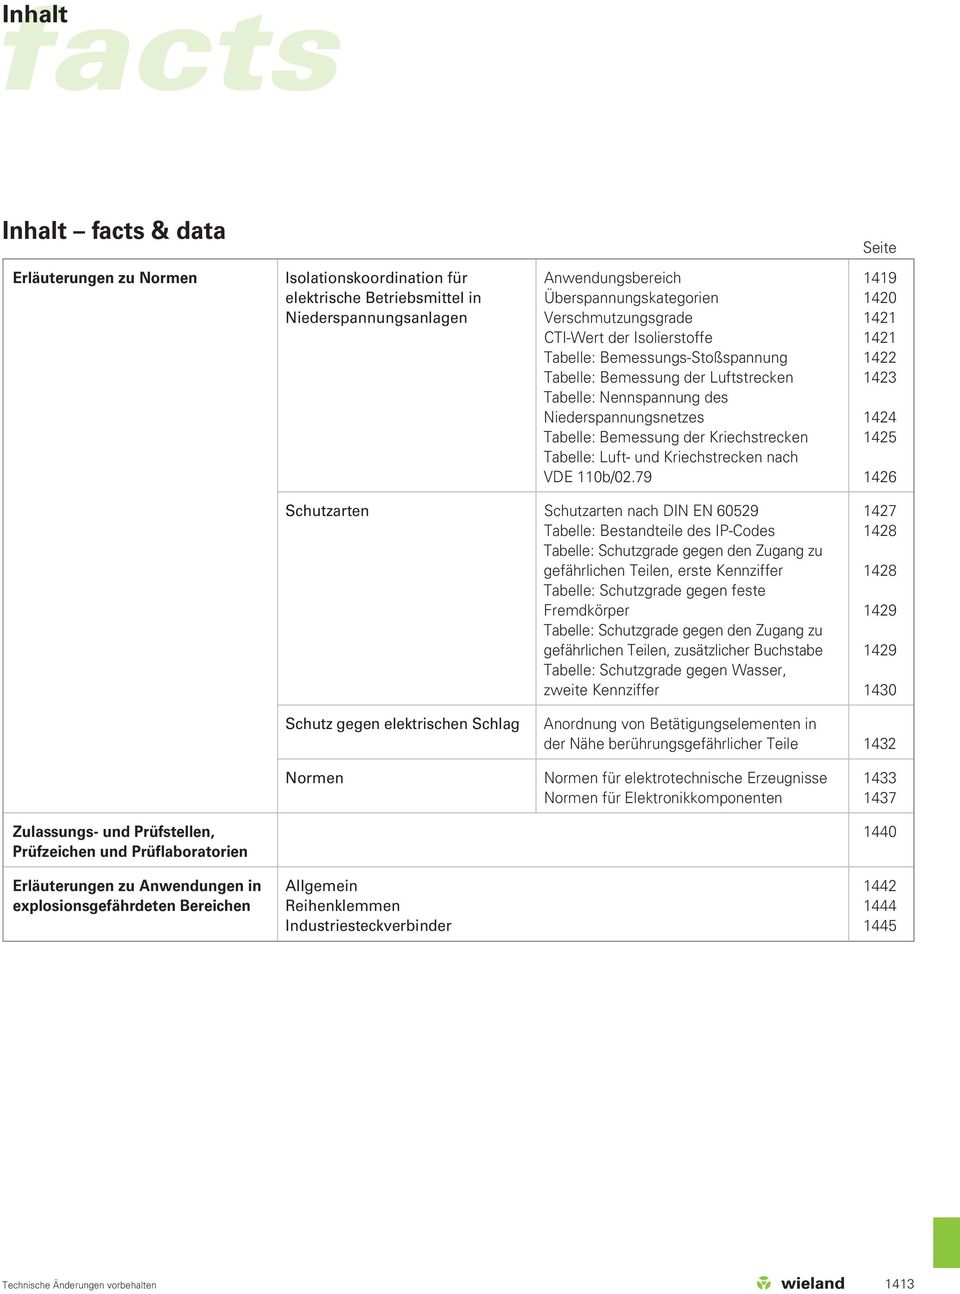 Bemessung der Kriechstrecken 1425 Tabelle: Luft- und Kriechstrecken nach VDE 110b/02.